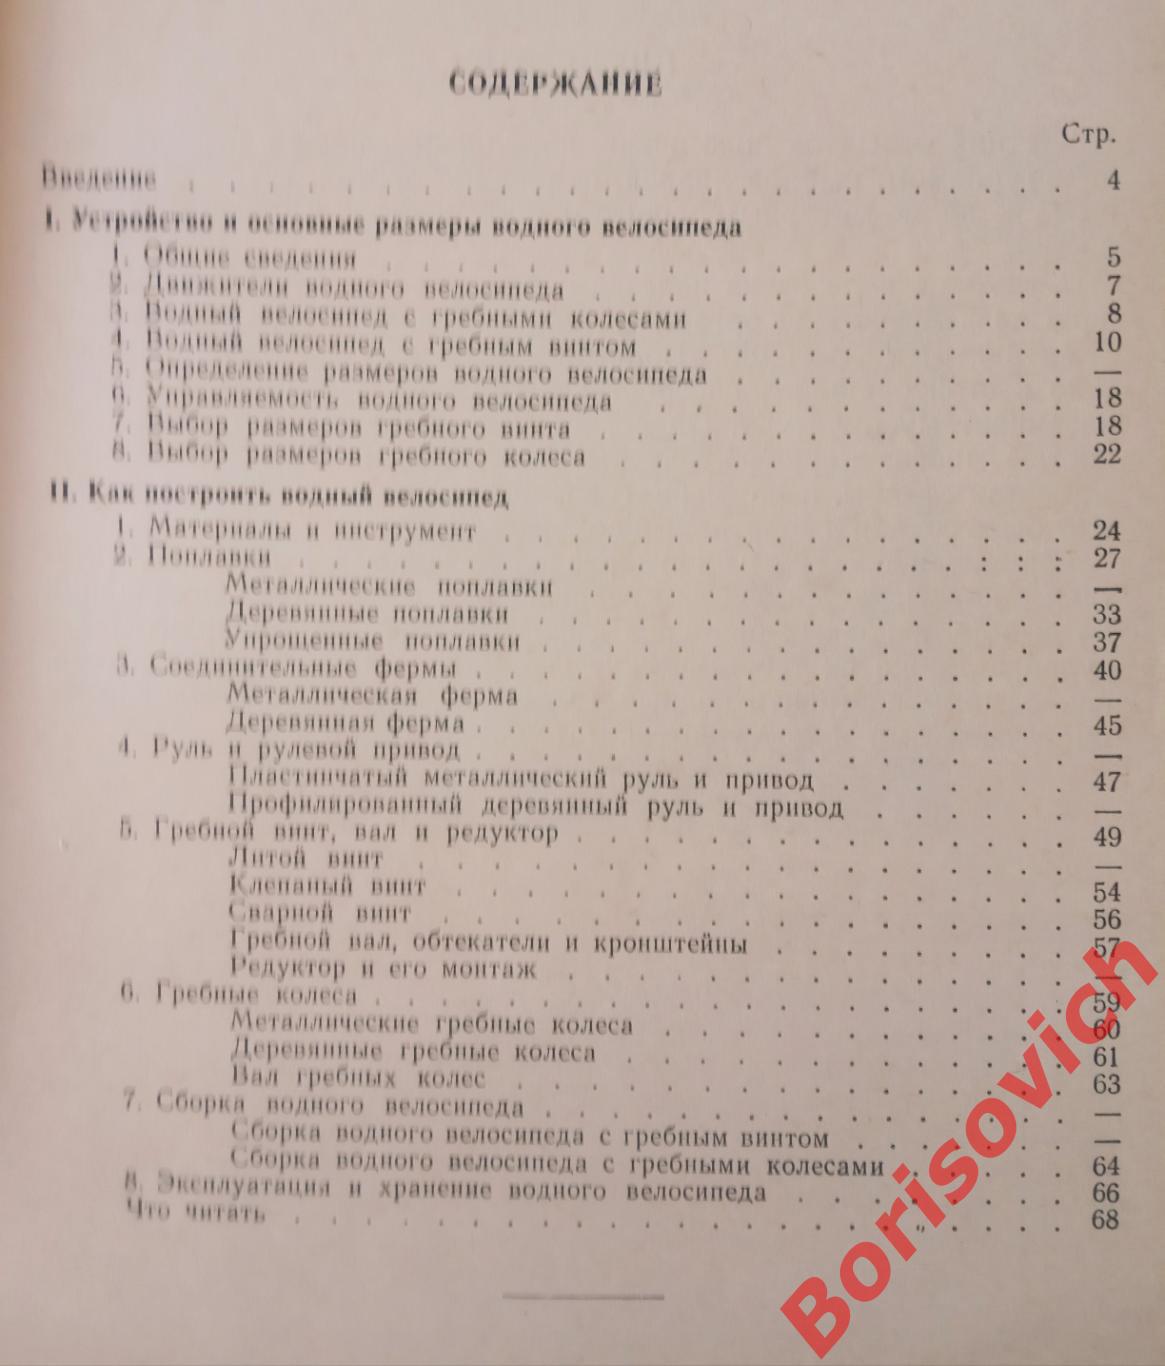 Как построить водный велосипед Судпромгиз 1960 г 68 страниц Тираж 12 500 экз 1